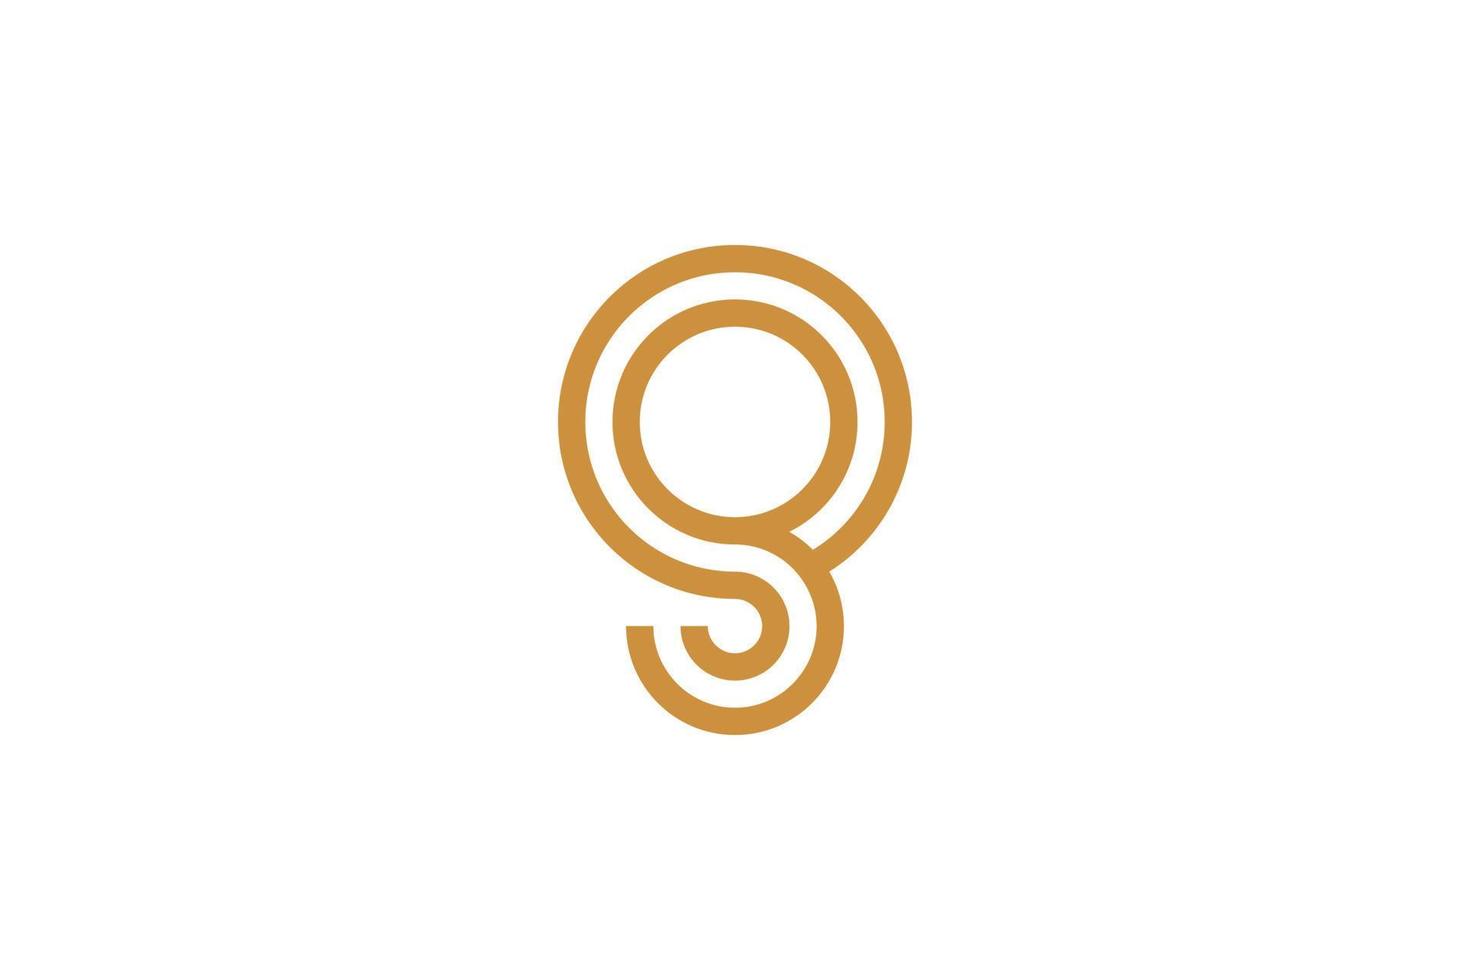 Creative Letter G Logo Templates vector